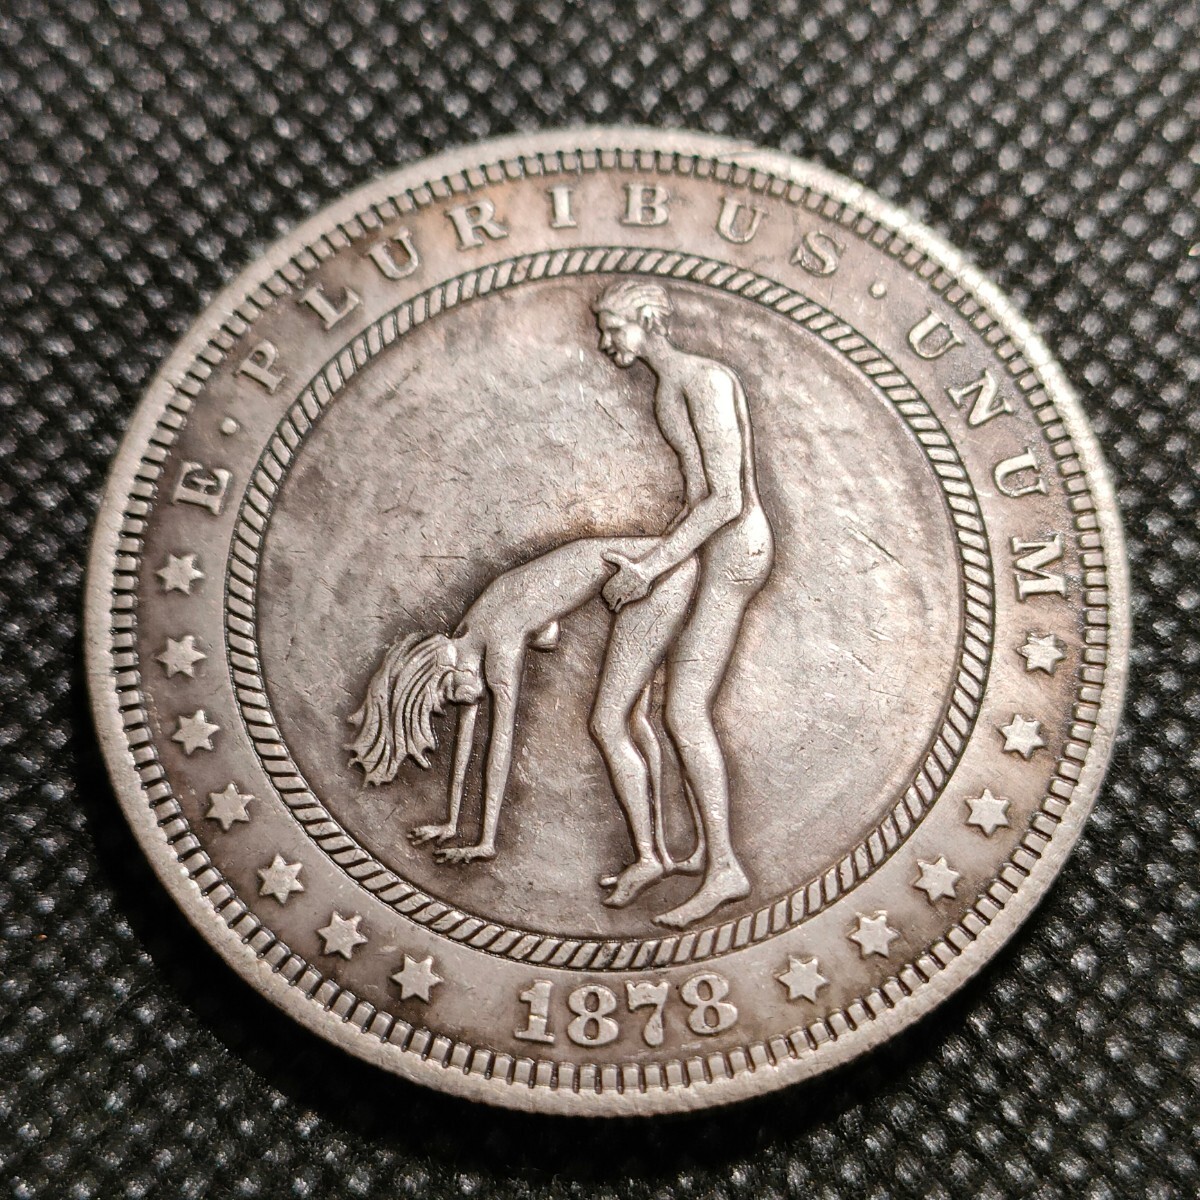 6037 アメリカ古銭 ルンペン 約38mm イーグル チャレンジコイン ゴルフマーカー コイン アンティーク ホーボーの画像1